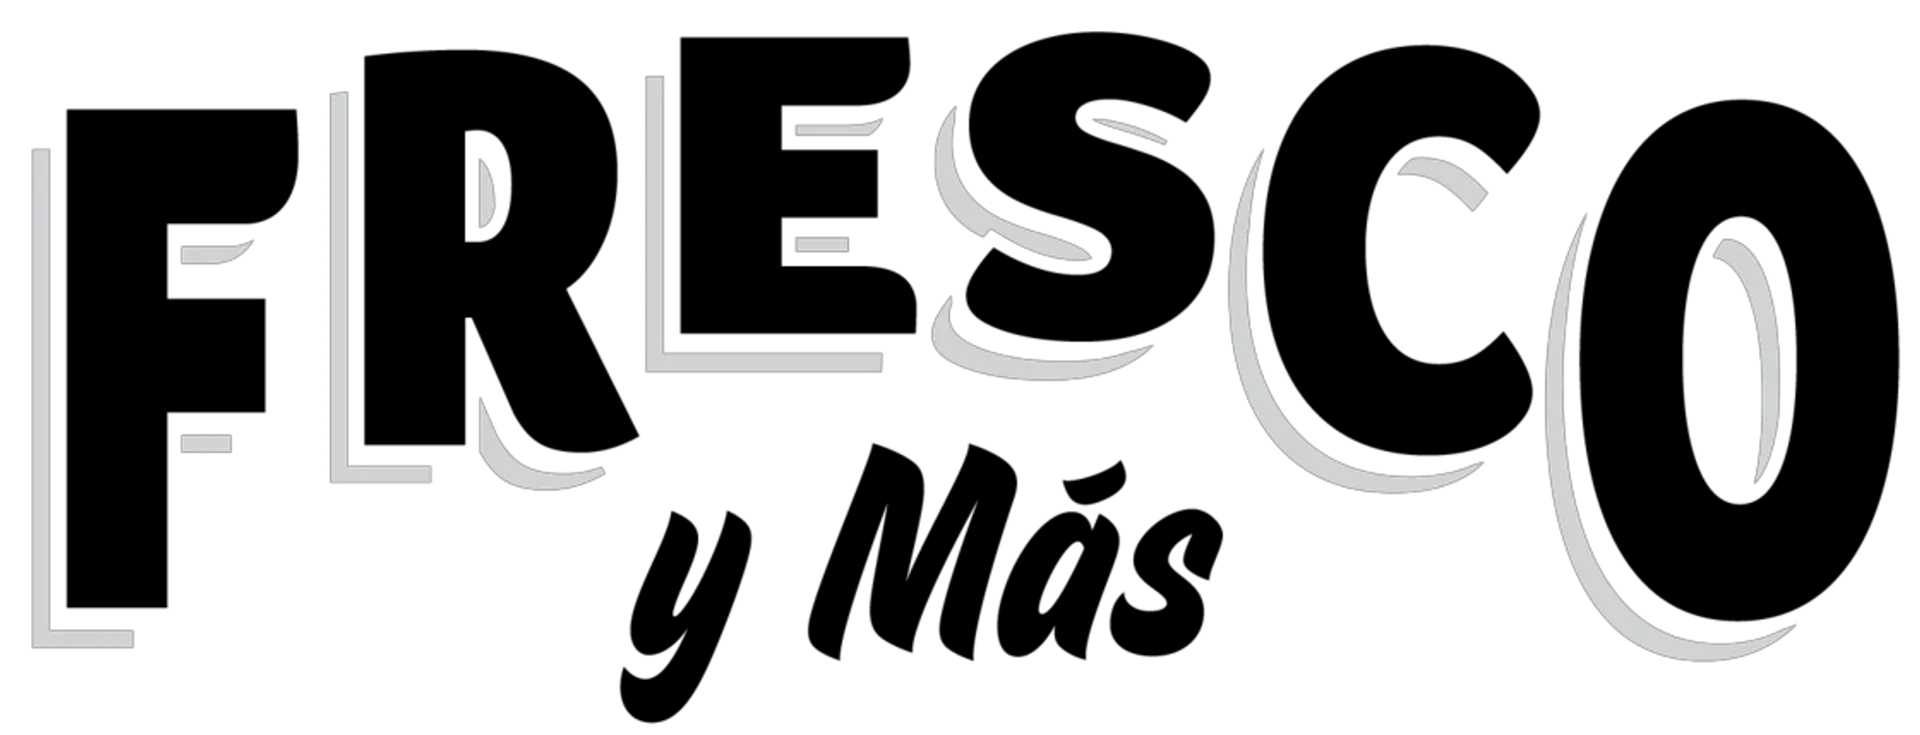 FRESCO Y MÁS logo. Current weekly ad